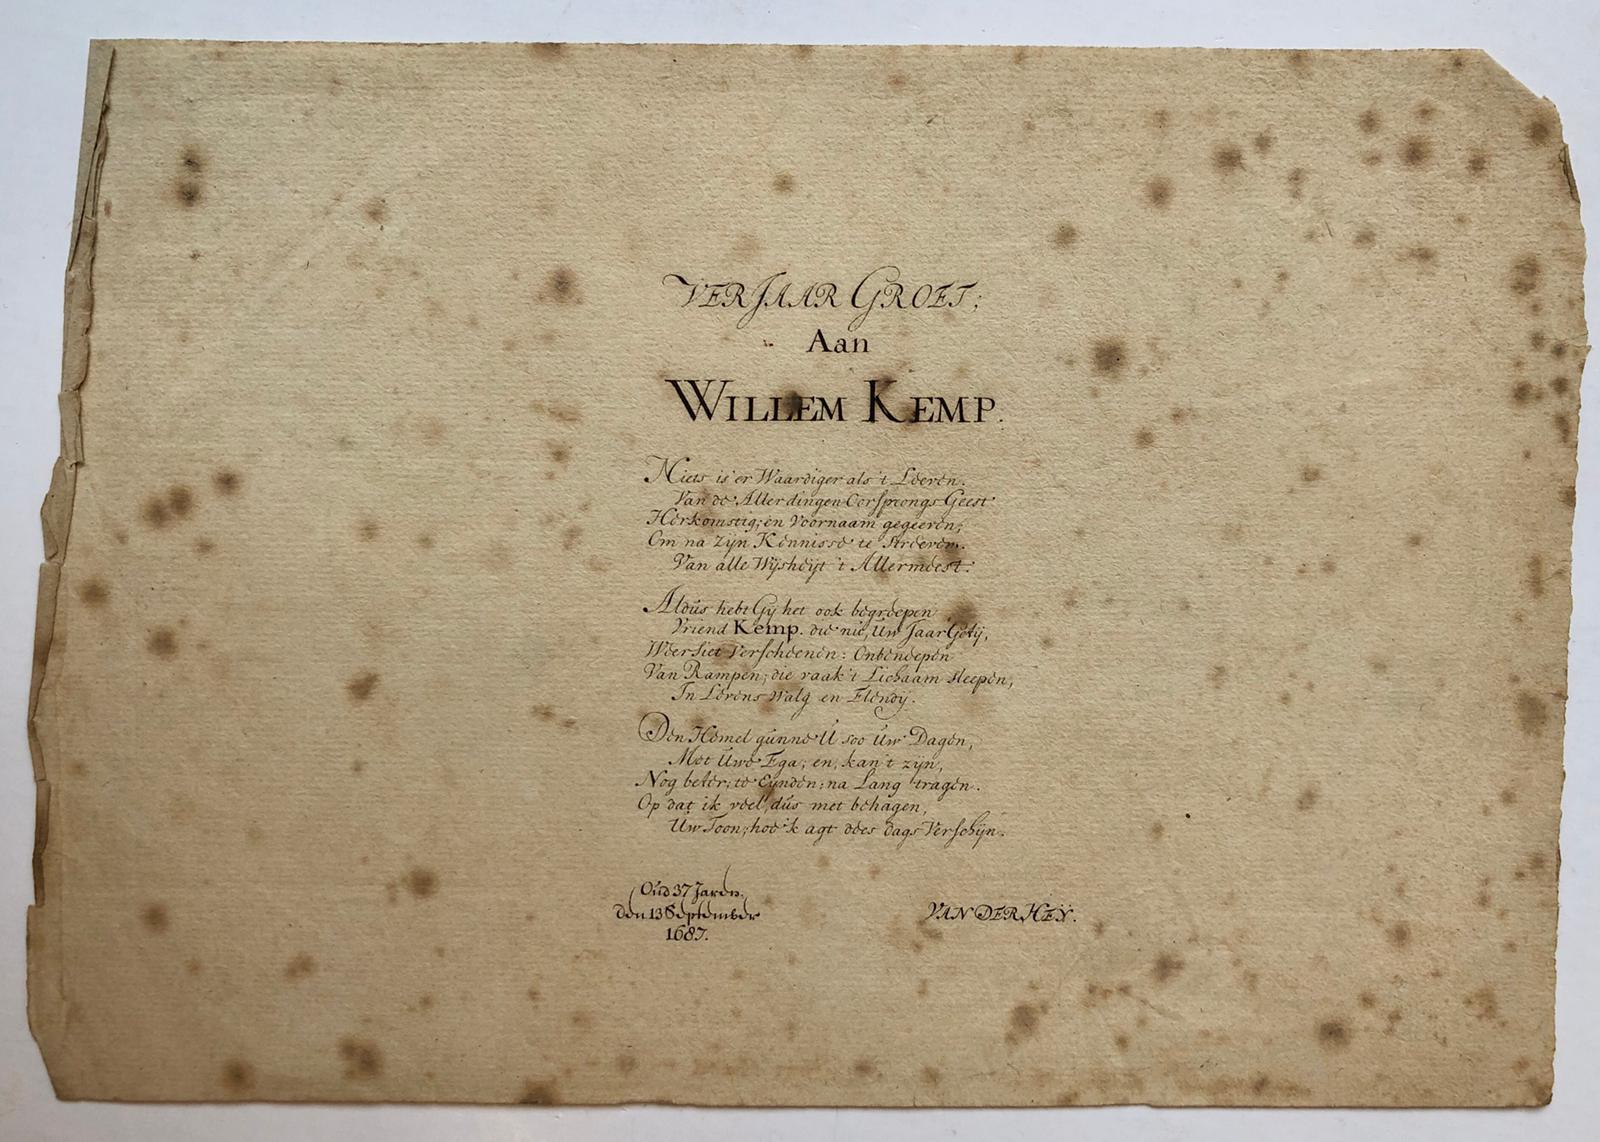  - [CALLIGRAPHY 1687, KEMP, VAN DER HEY, KALLIGRAFIE] Gekalligrafeerd blaadje met `Verjaargroet aan Willem Kemp', getekend `Van der Hey' en `oud 37 jaren den 13 september 1687', 14x20 cm.